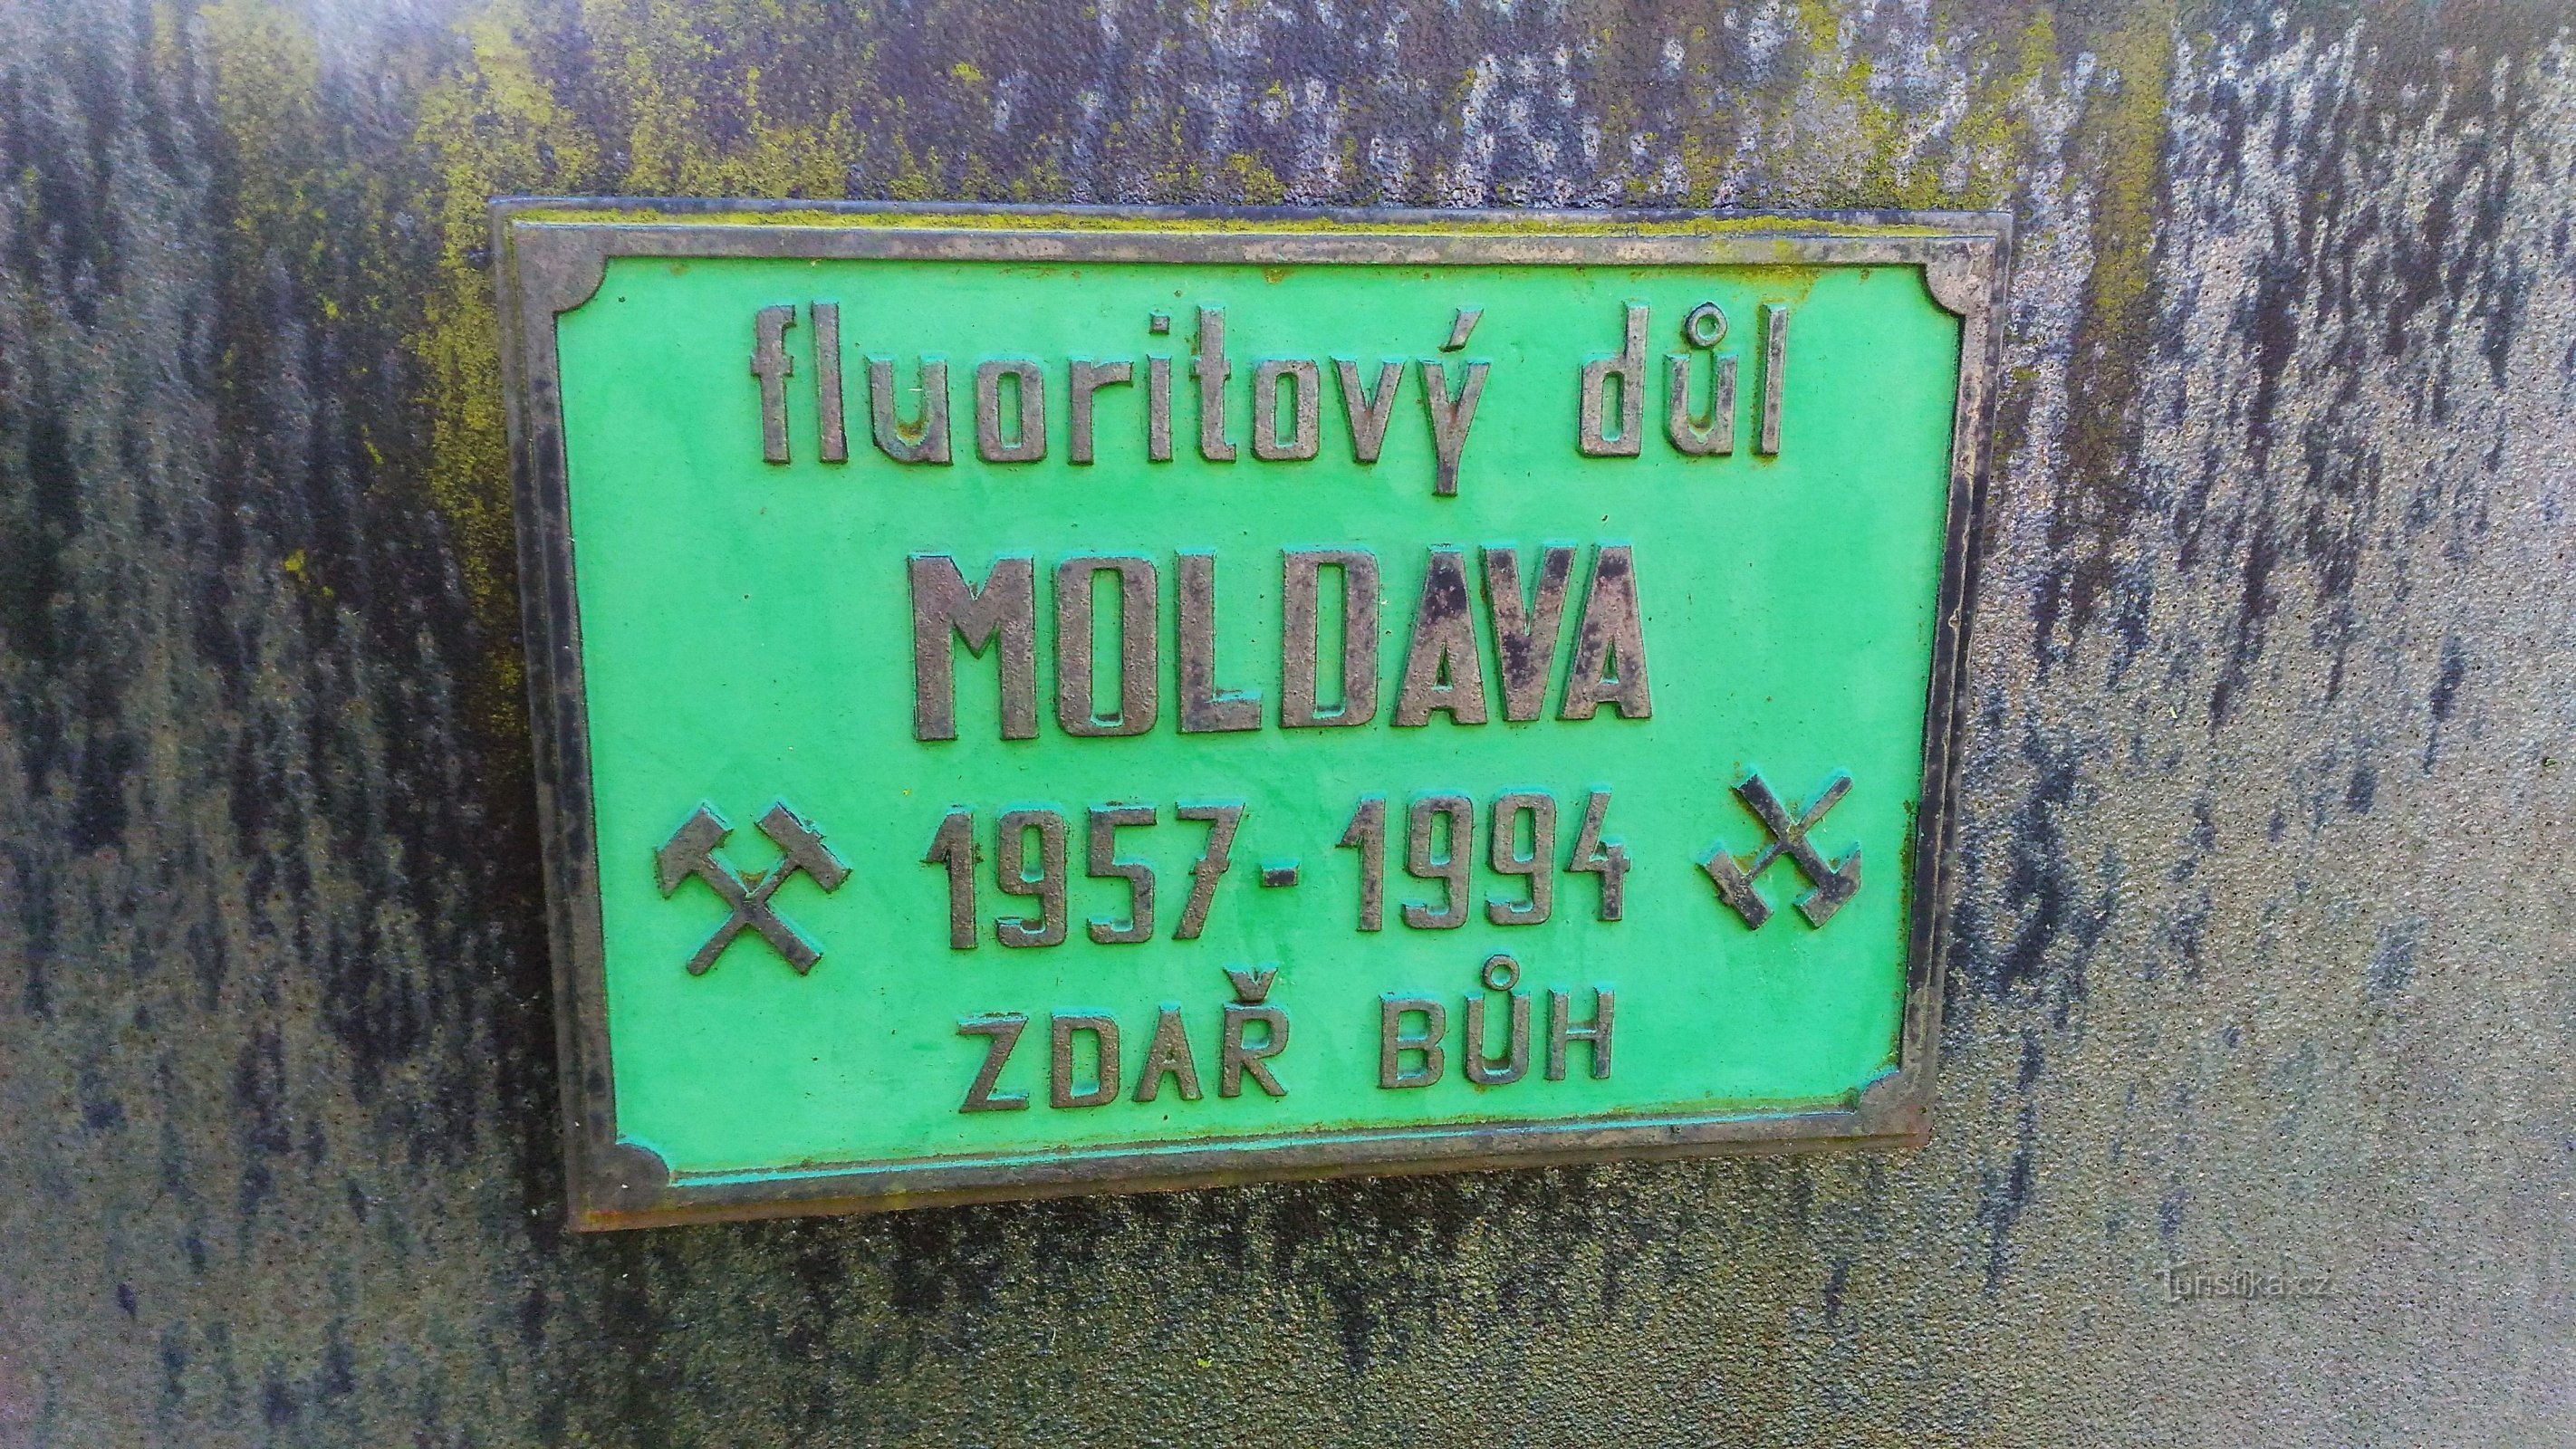 A moldvai fluoritbányászat emlékműve